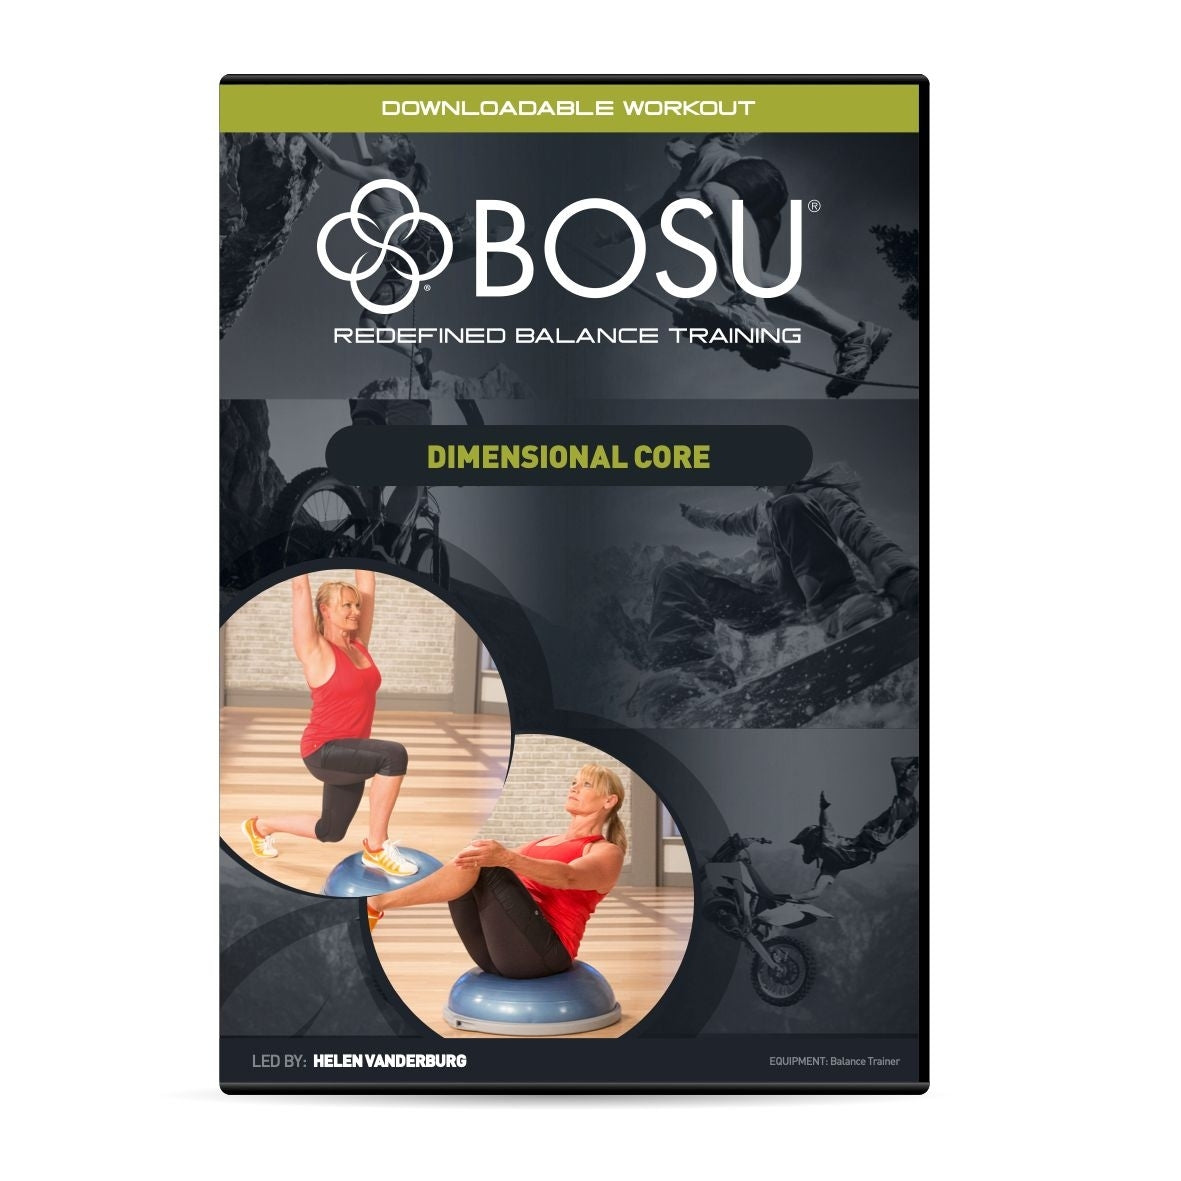 BOSU® Dimensional Core Download